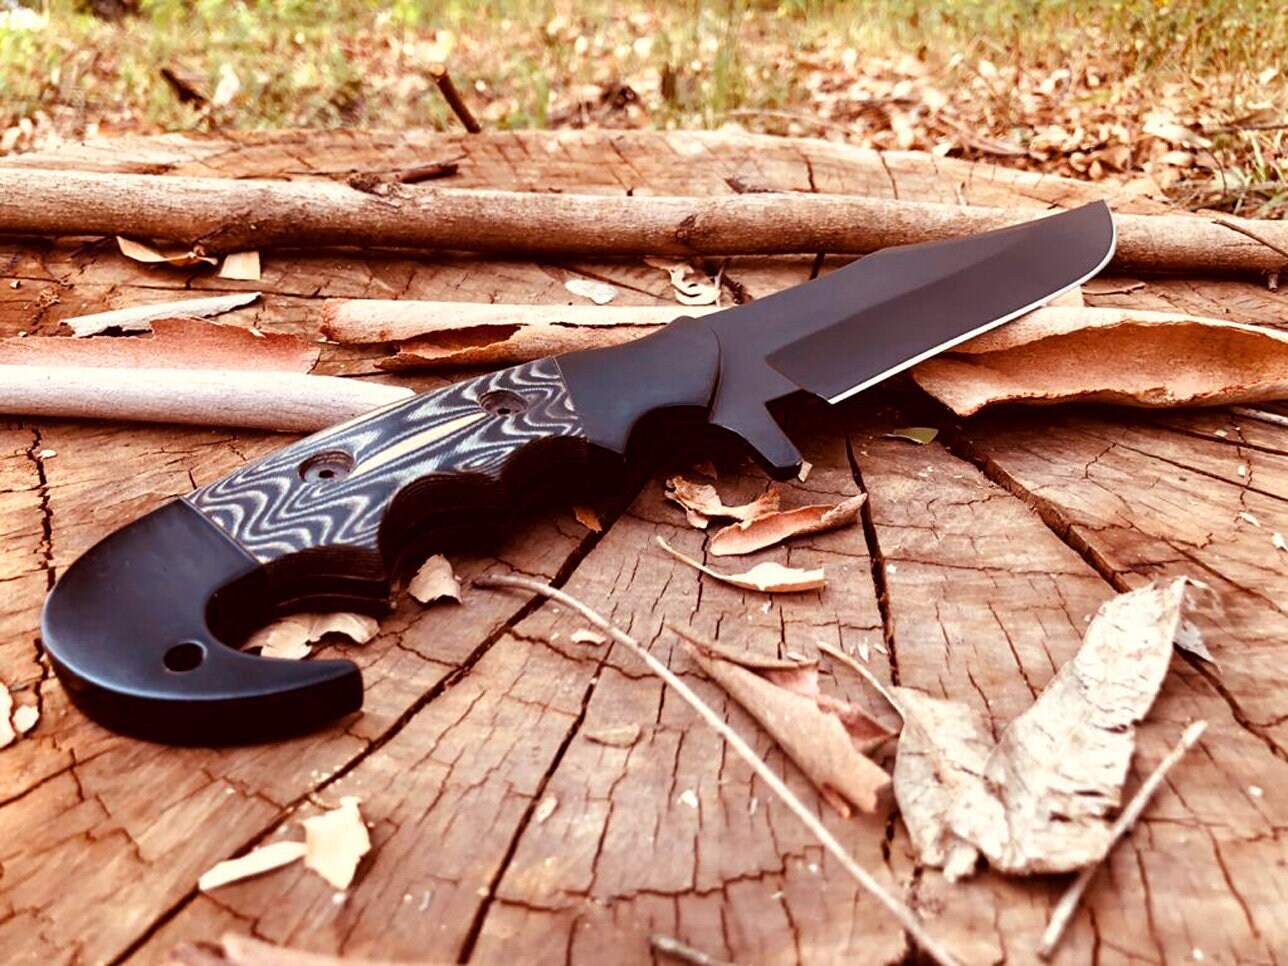 Damascus Knife Making Kit - Predator - (9 Handle Options) - DIY Blade Kit